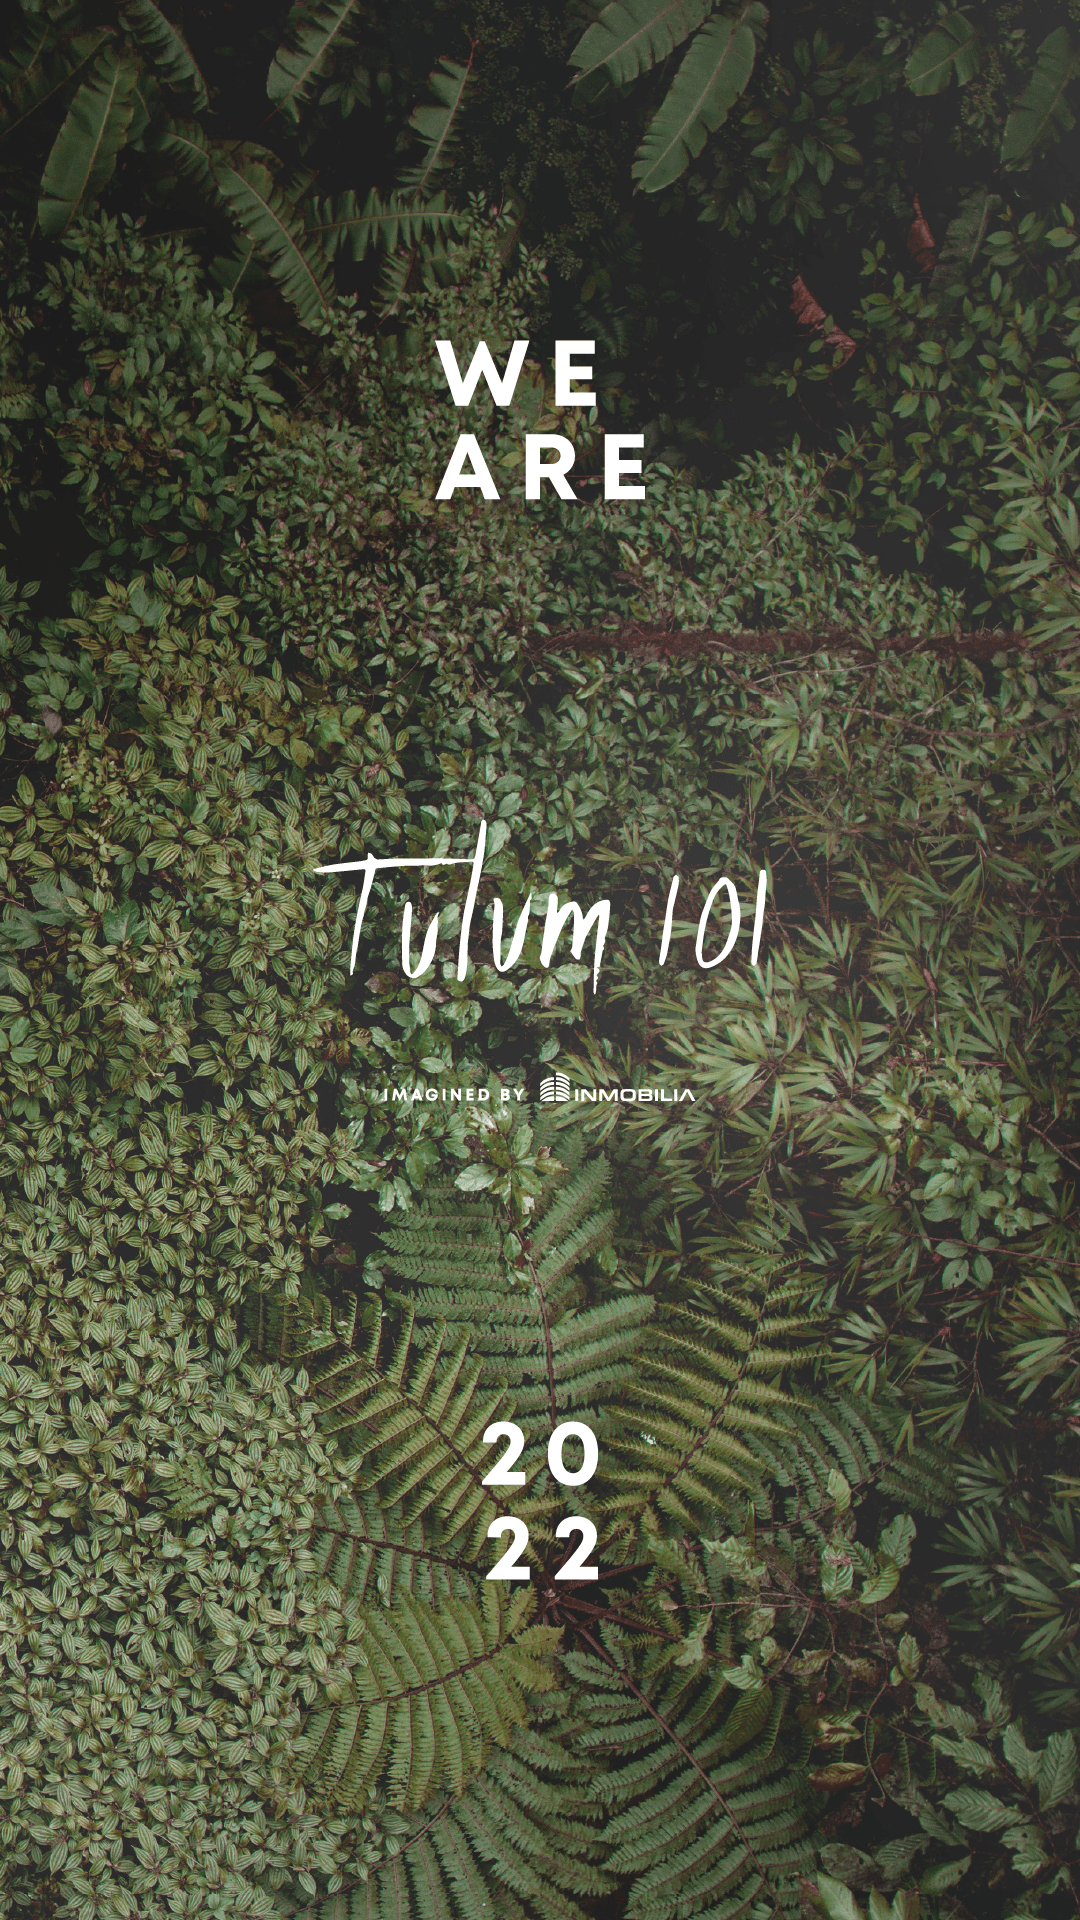 tulum 101